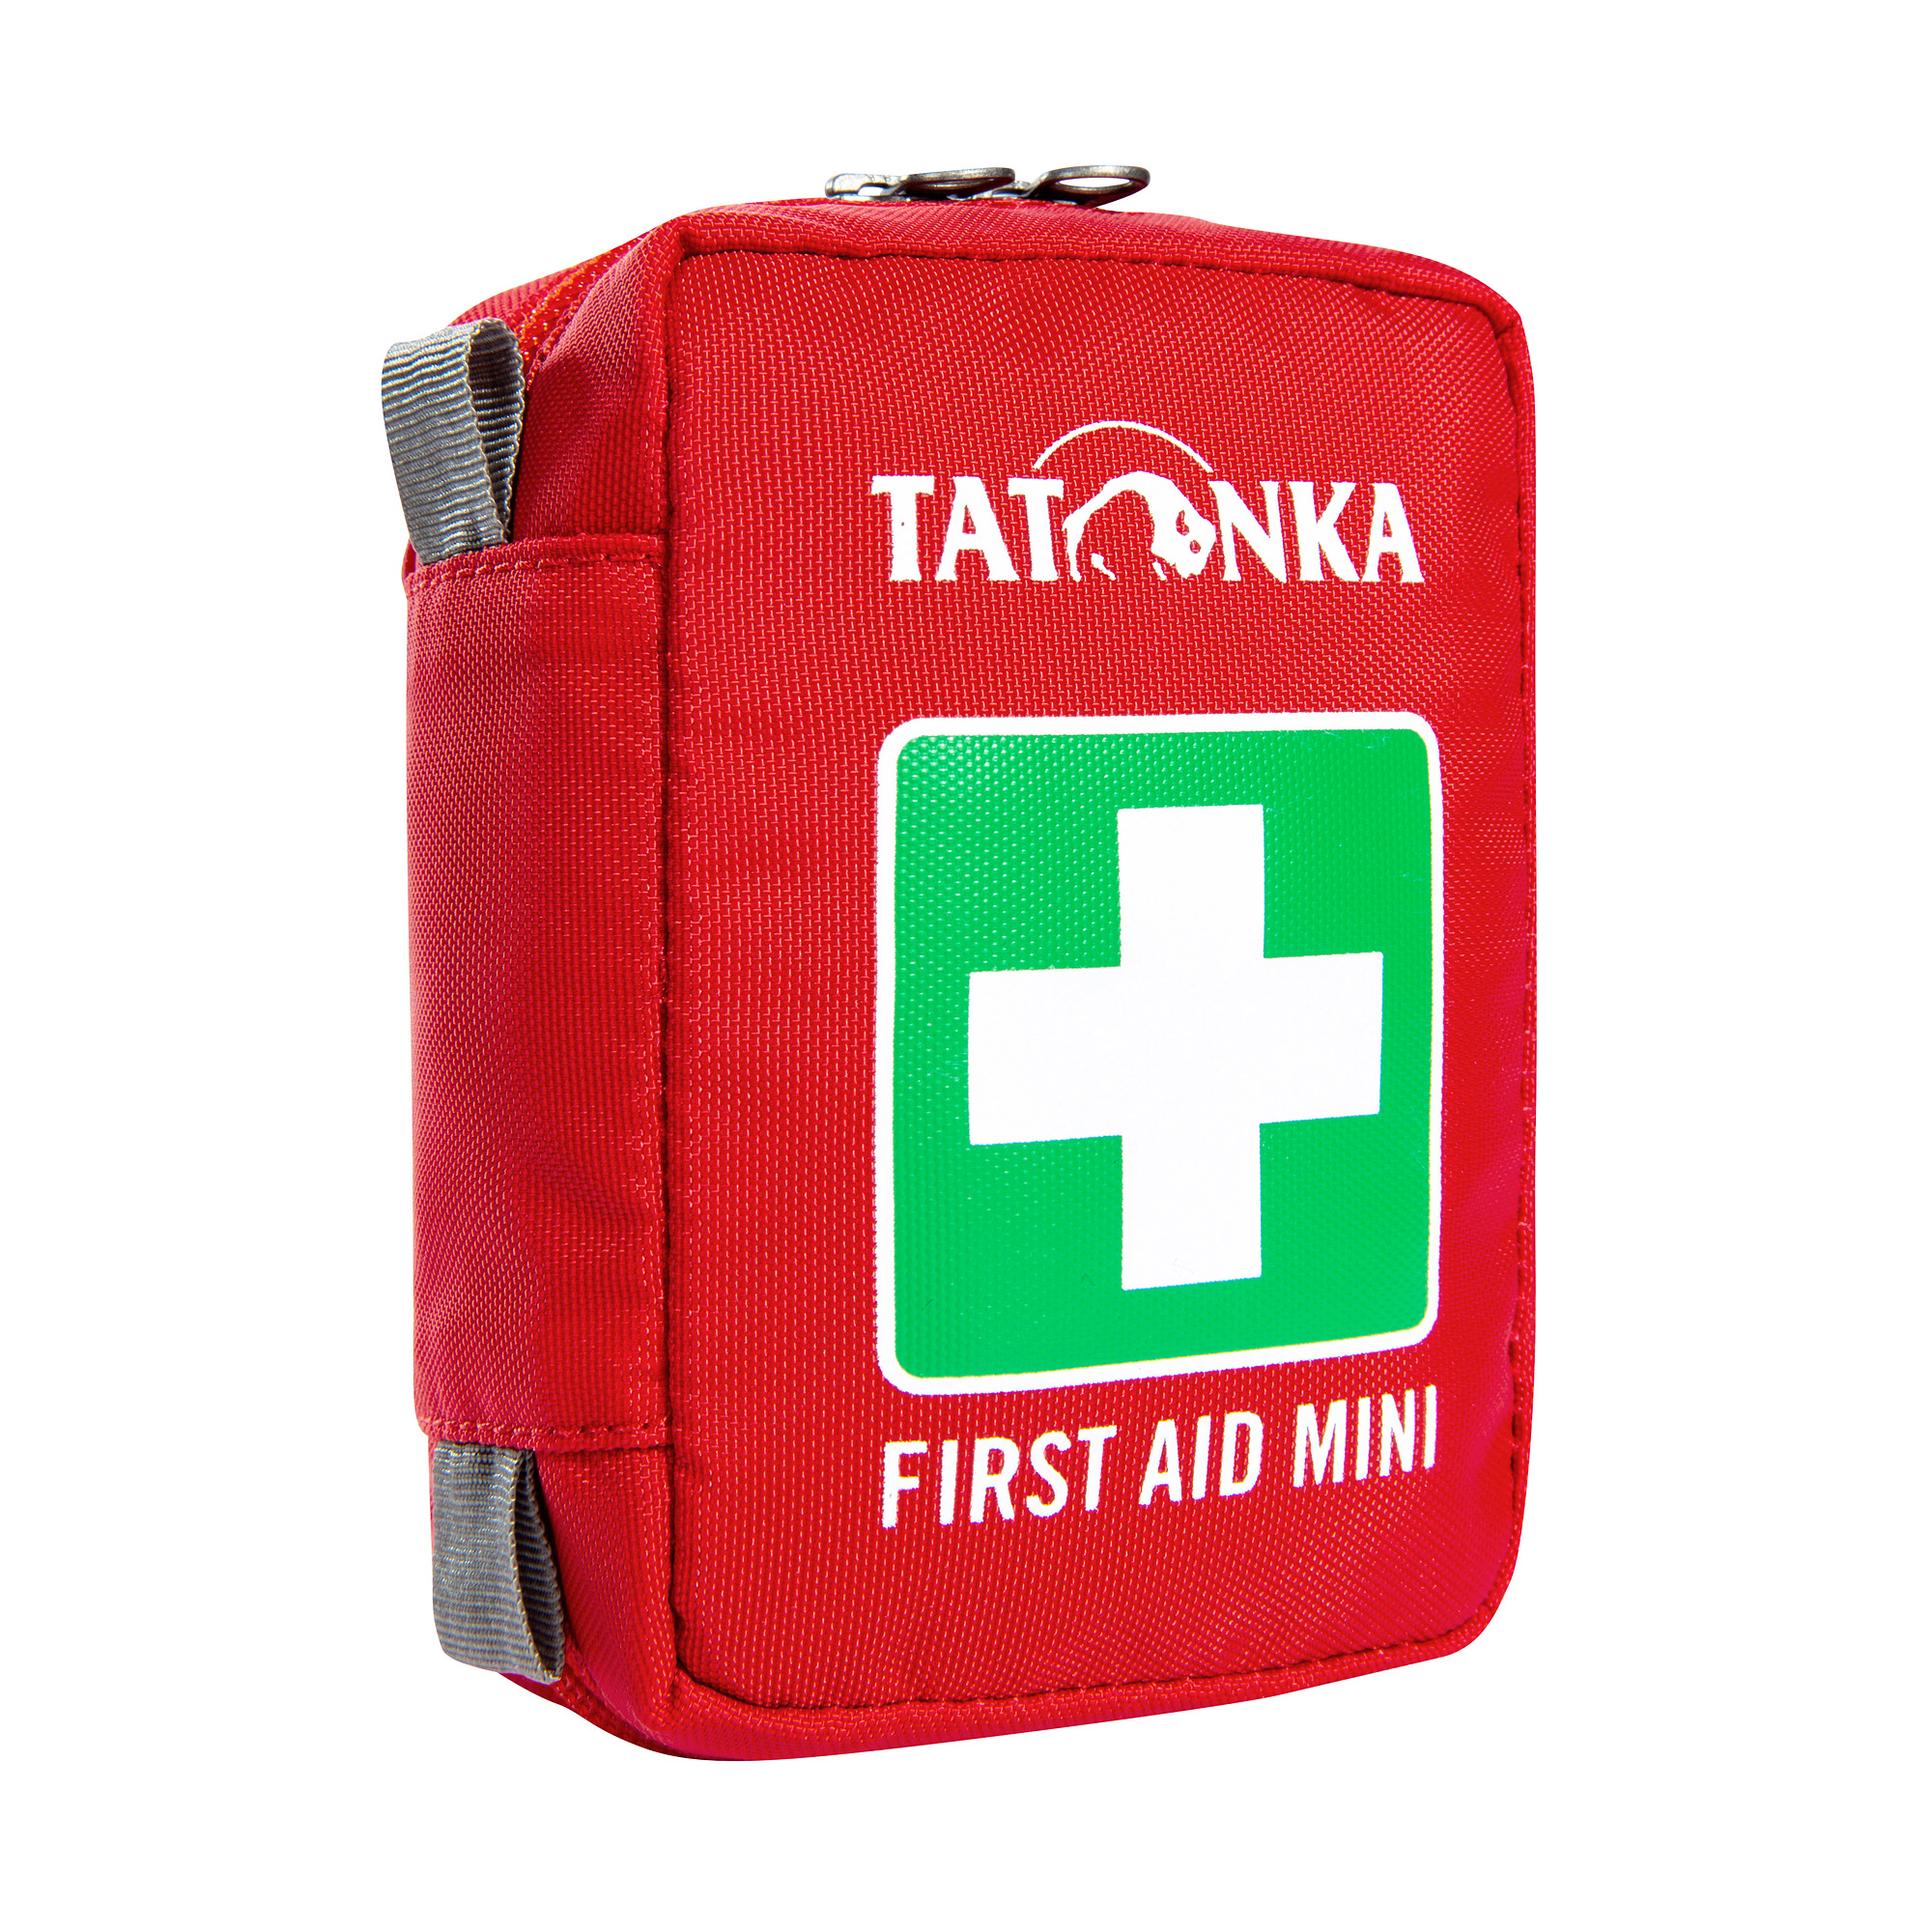 Tatonka First Aid Mini red rot Rucksack-Zubehör 4013236000597